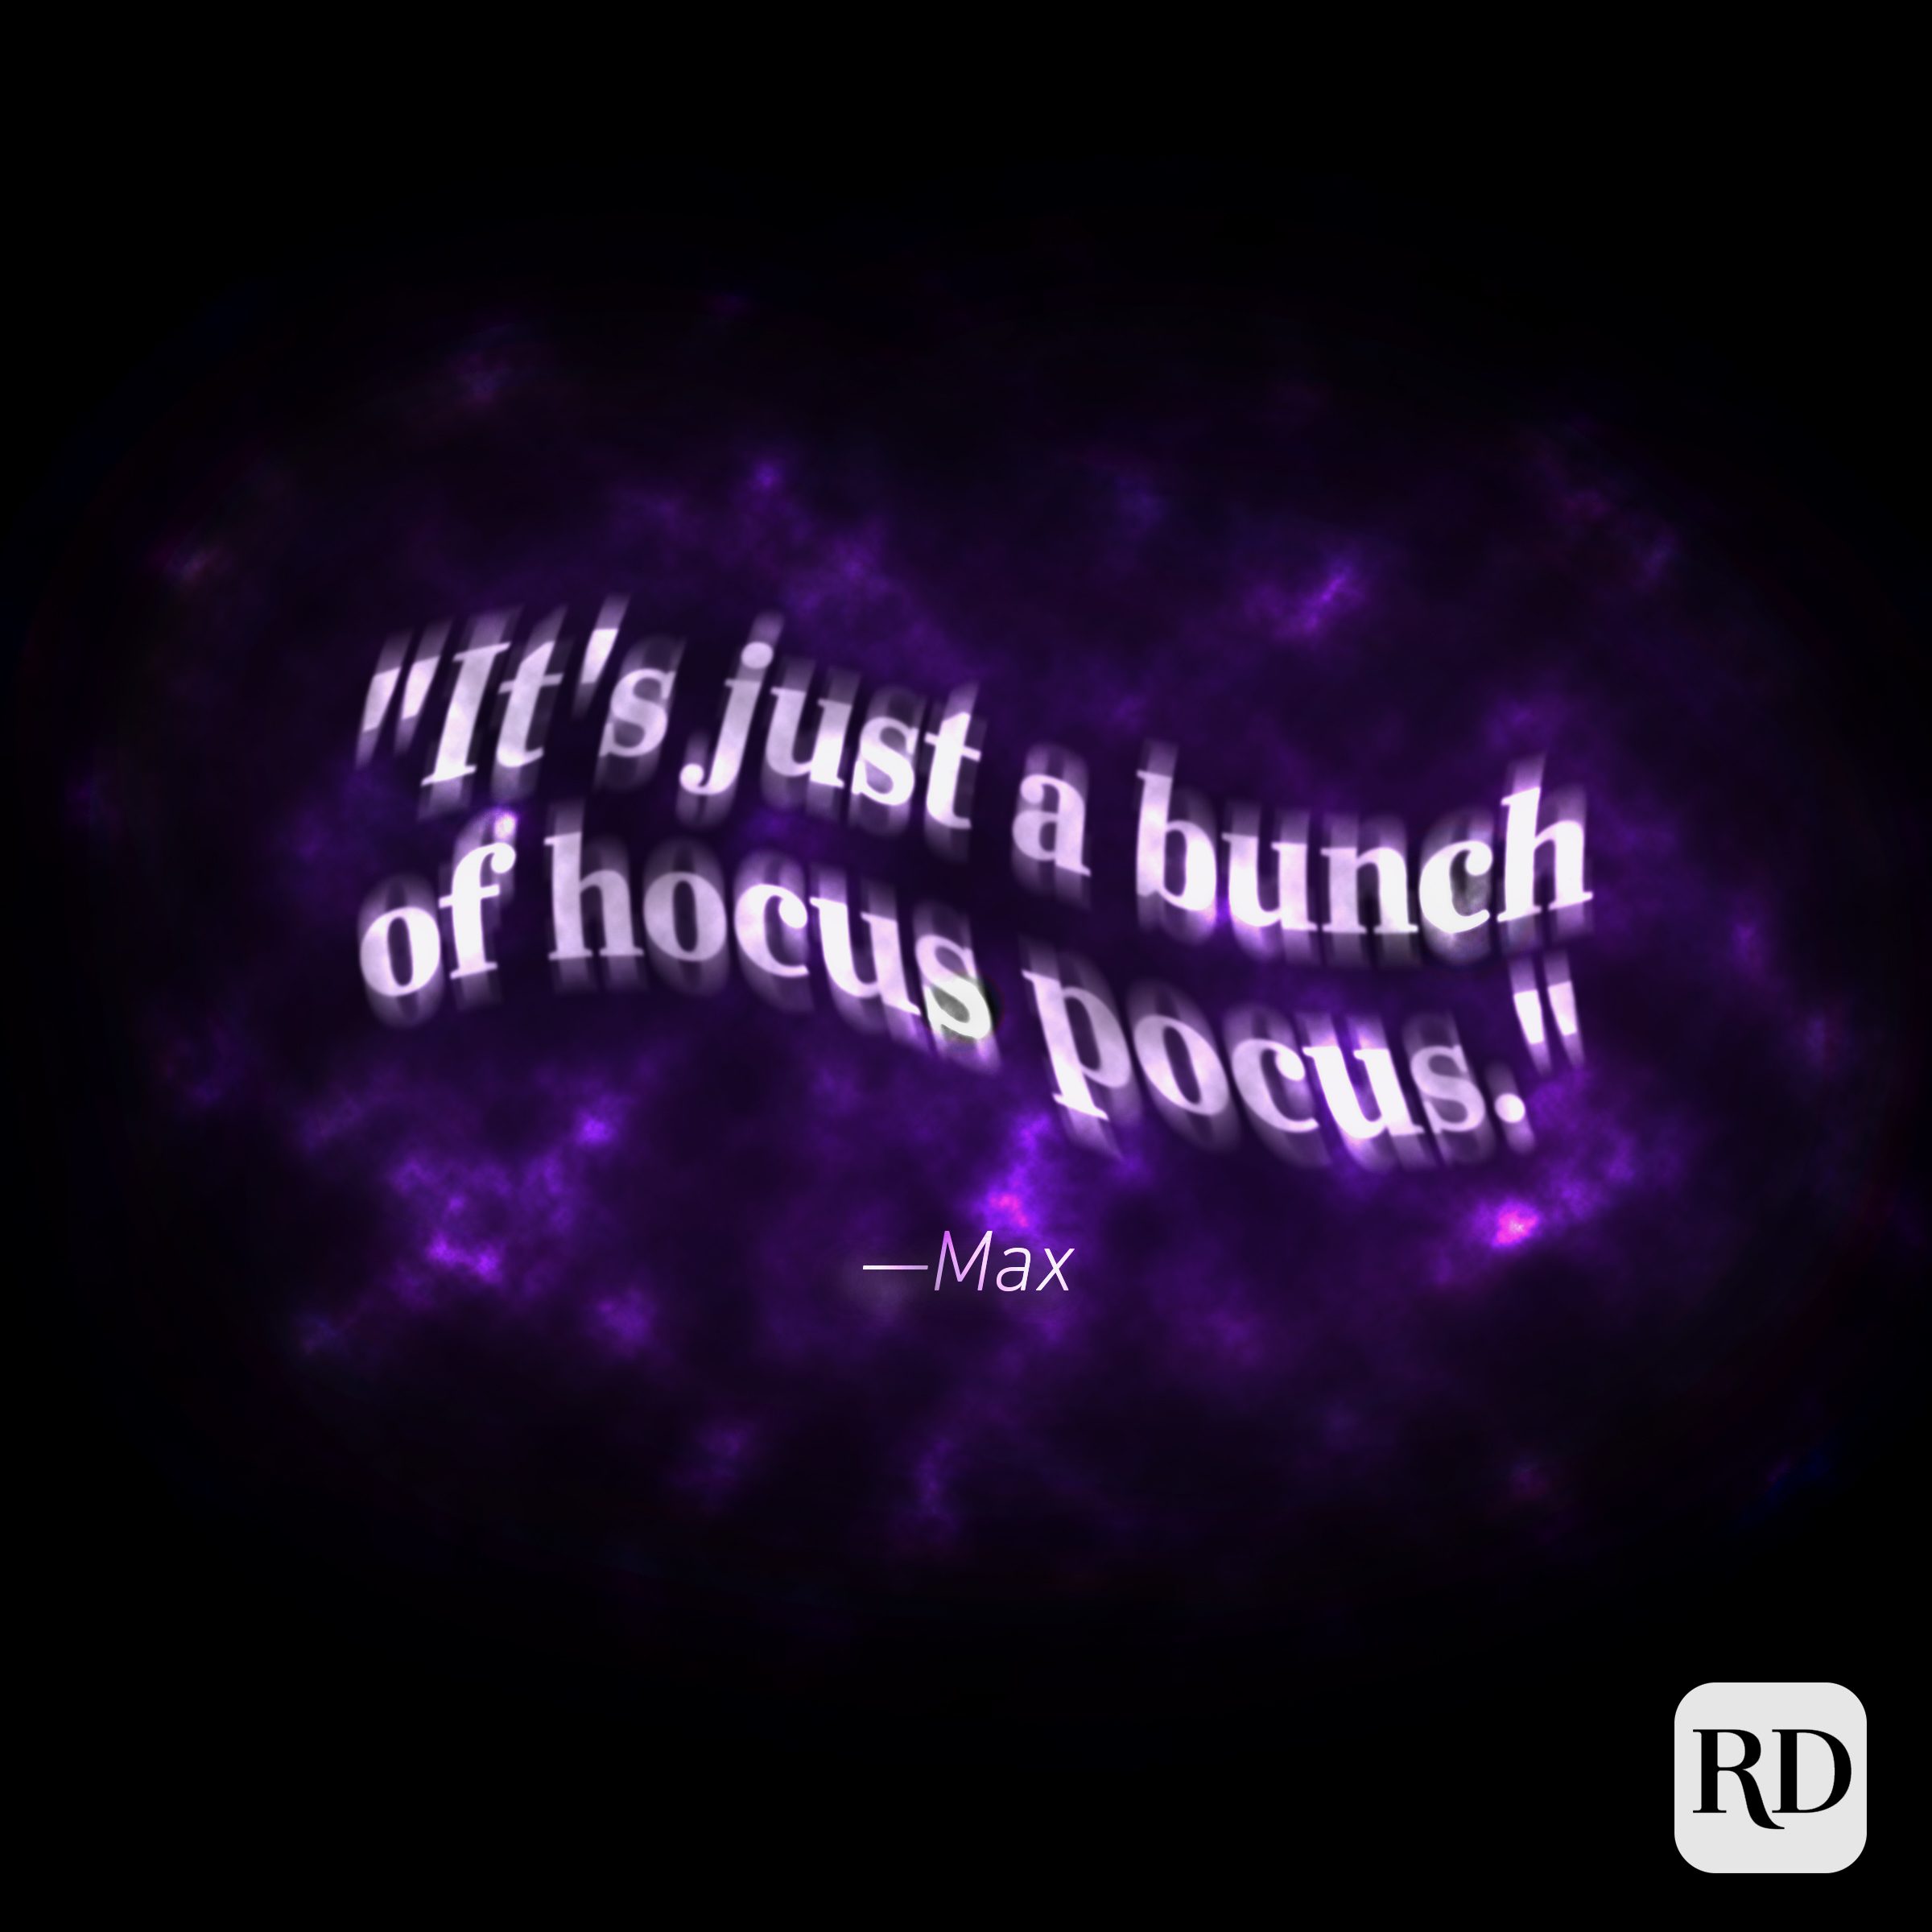 45 Best Hocus Pocus Quotes for Halloween — Quotes from Hocus Pocus